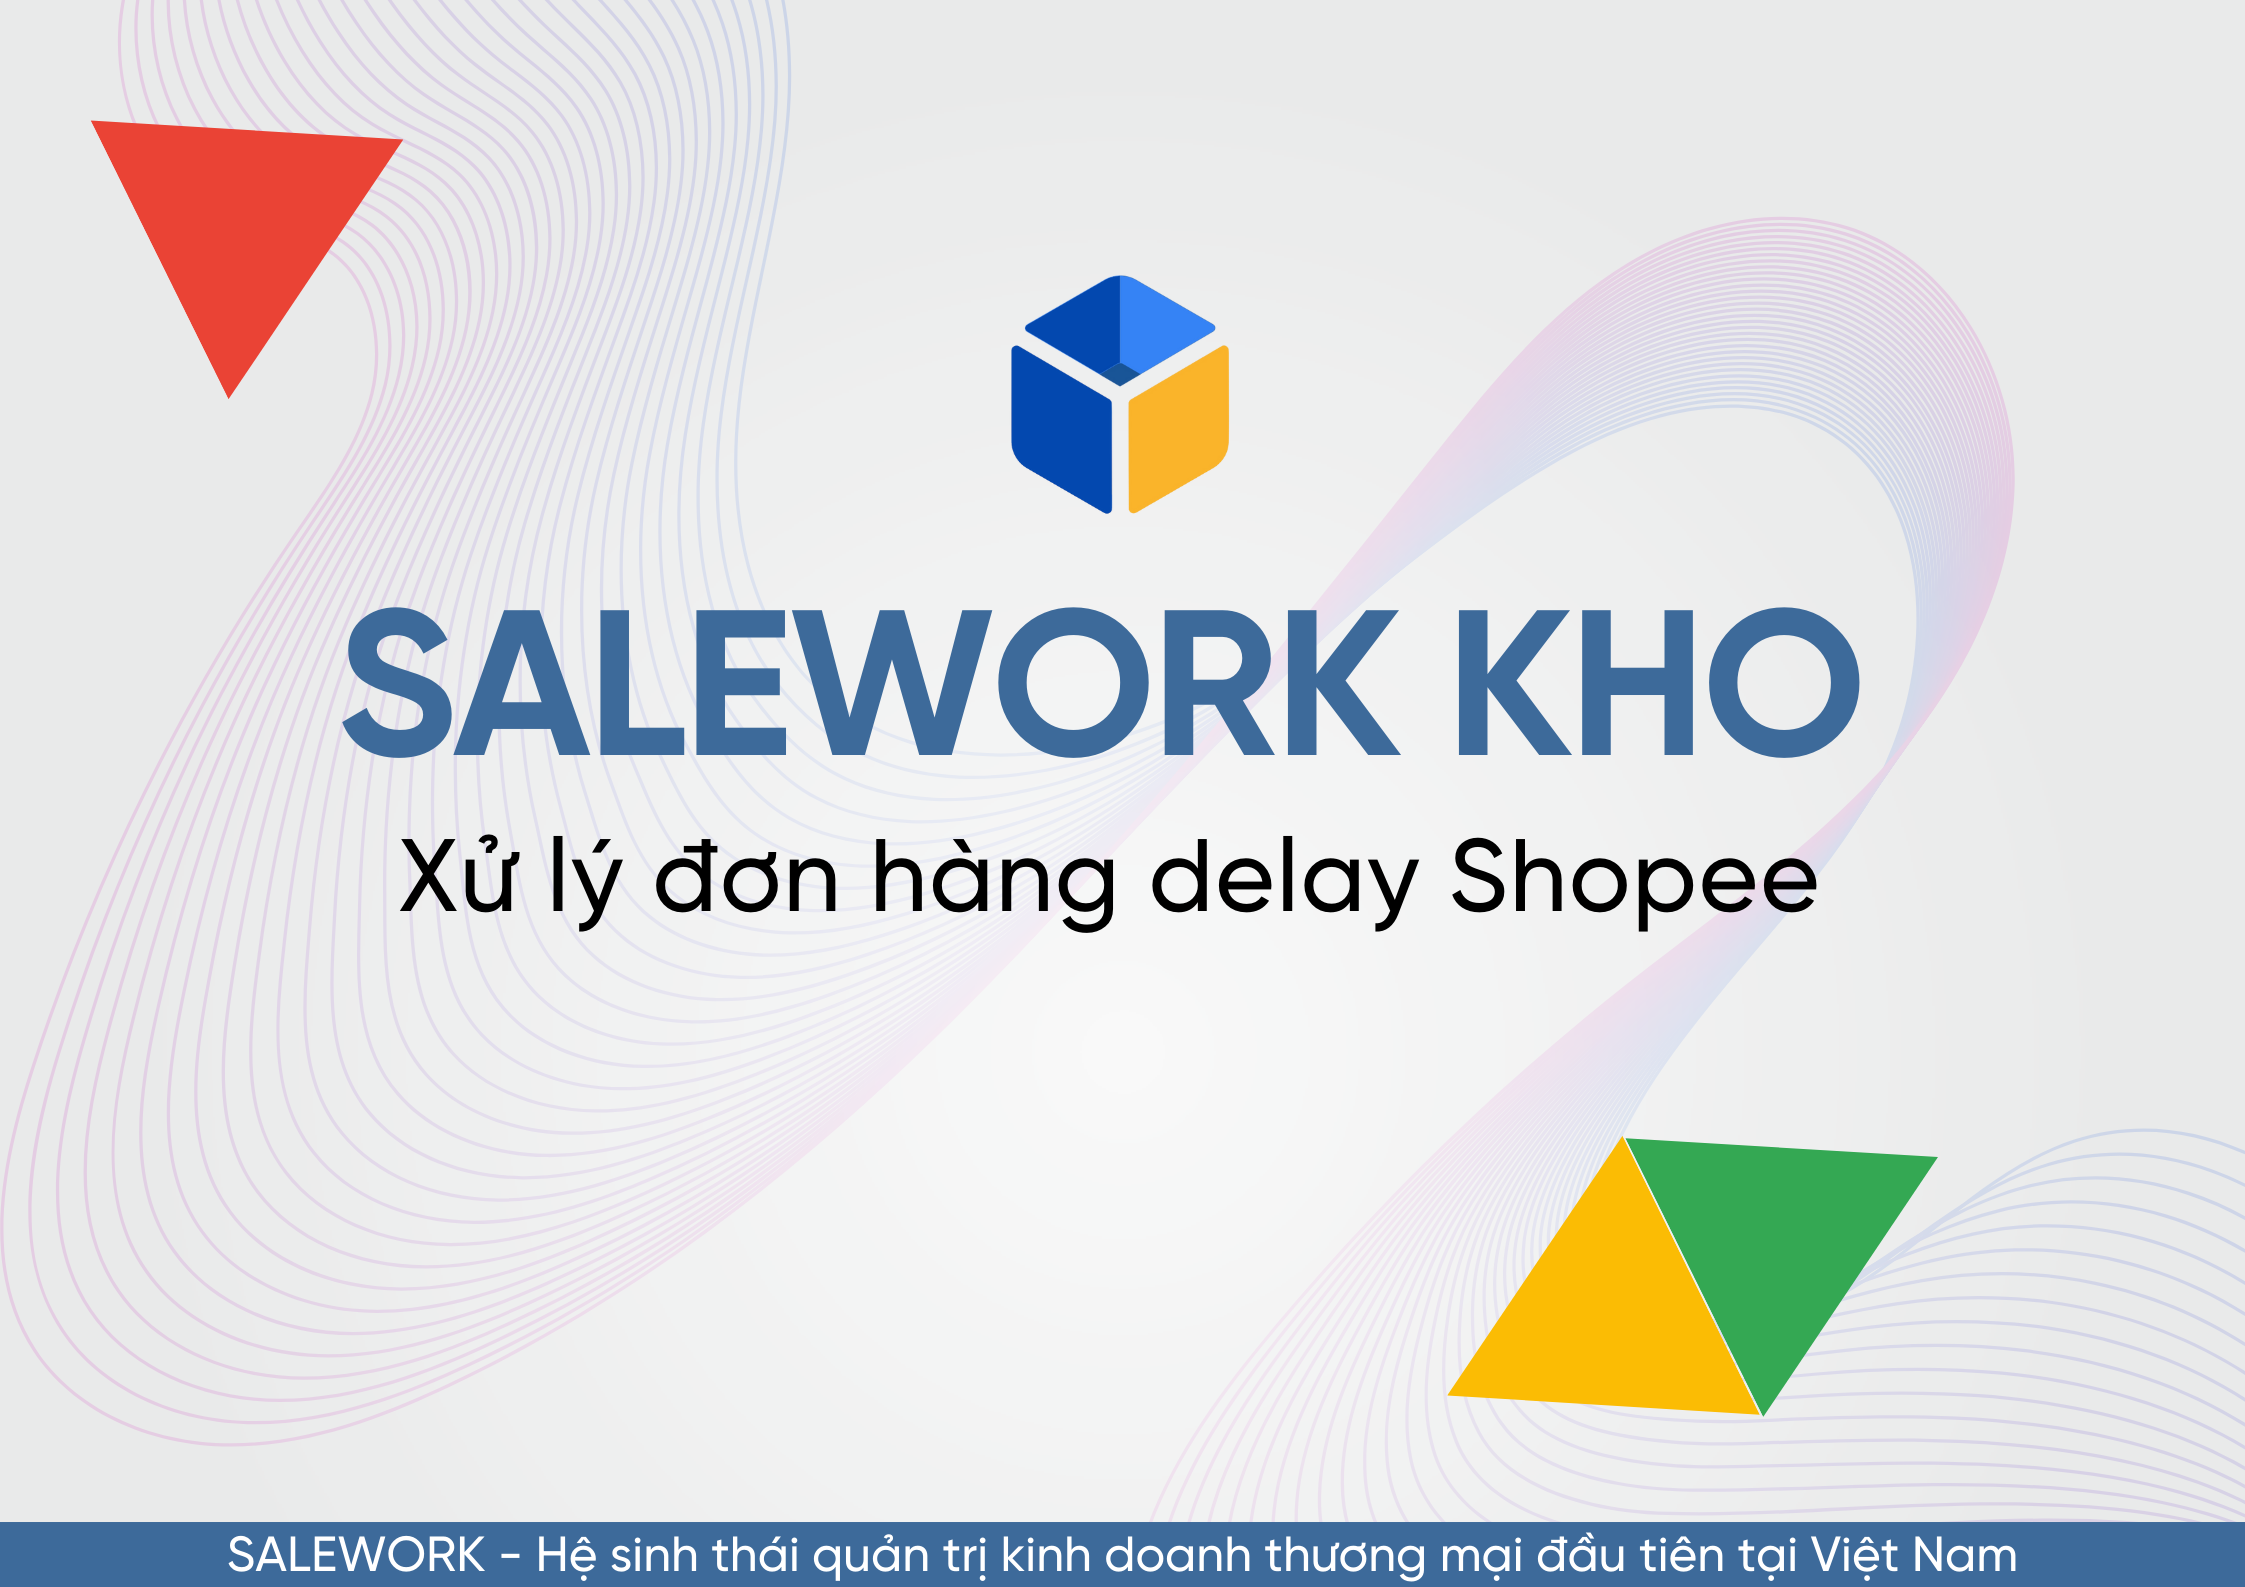 Hướng dẫn cách tìm và xử lý đơn hàng delay Shopee để giảm tỉ lệ hoàn tại Salework. - 37